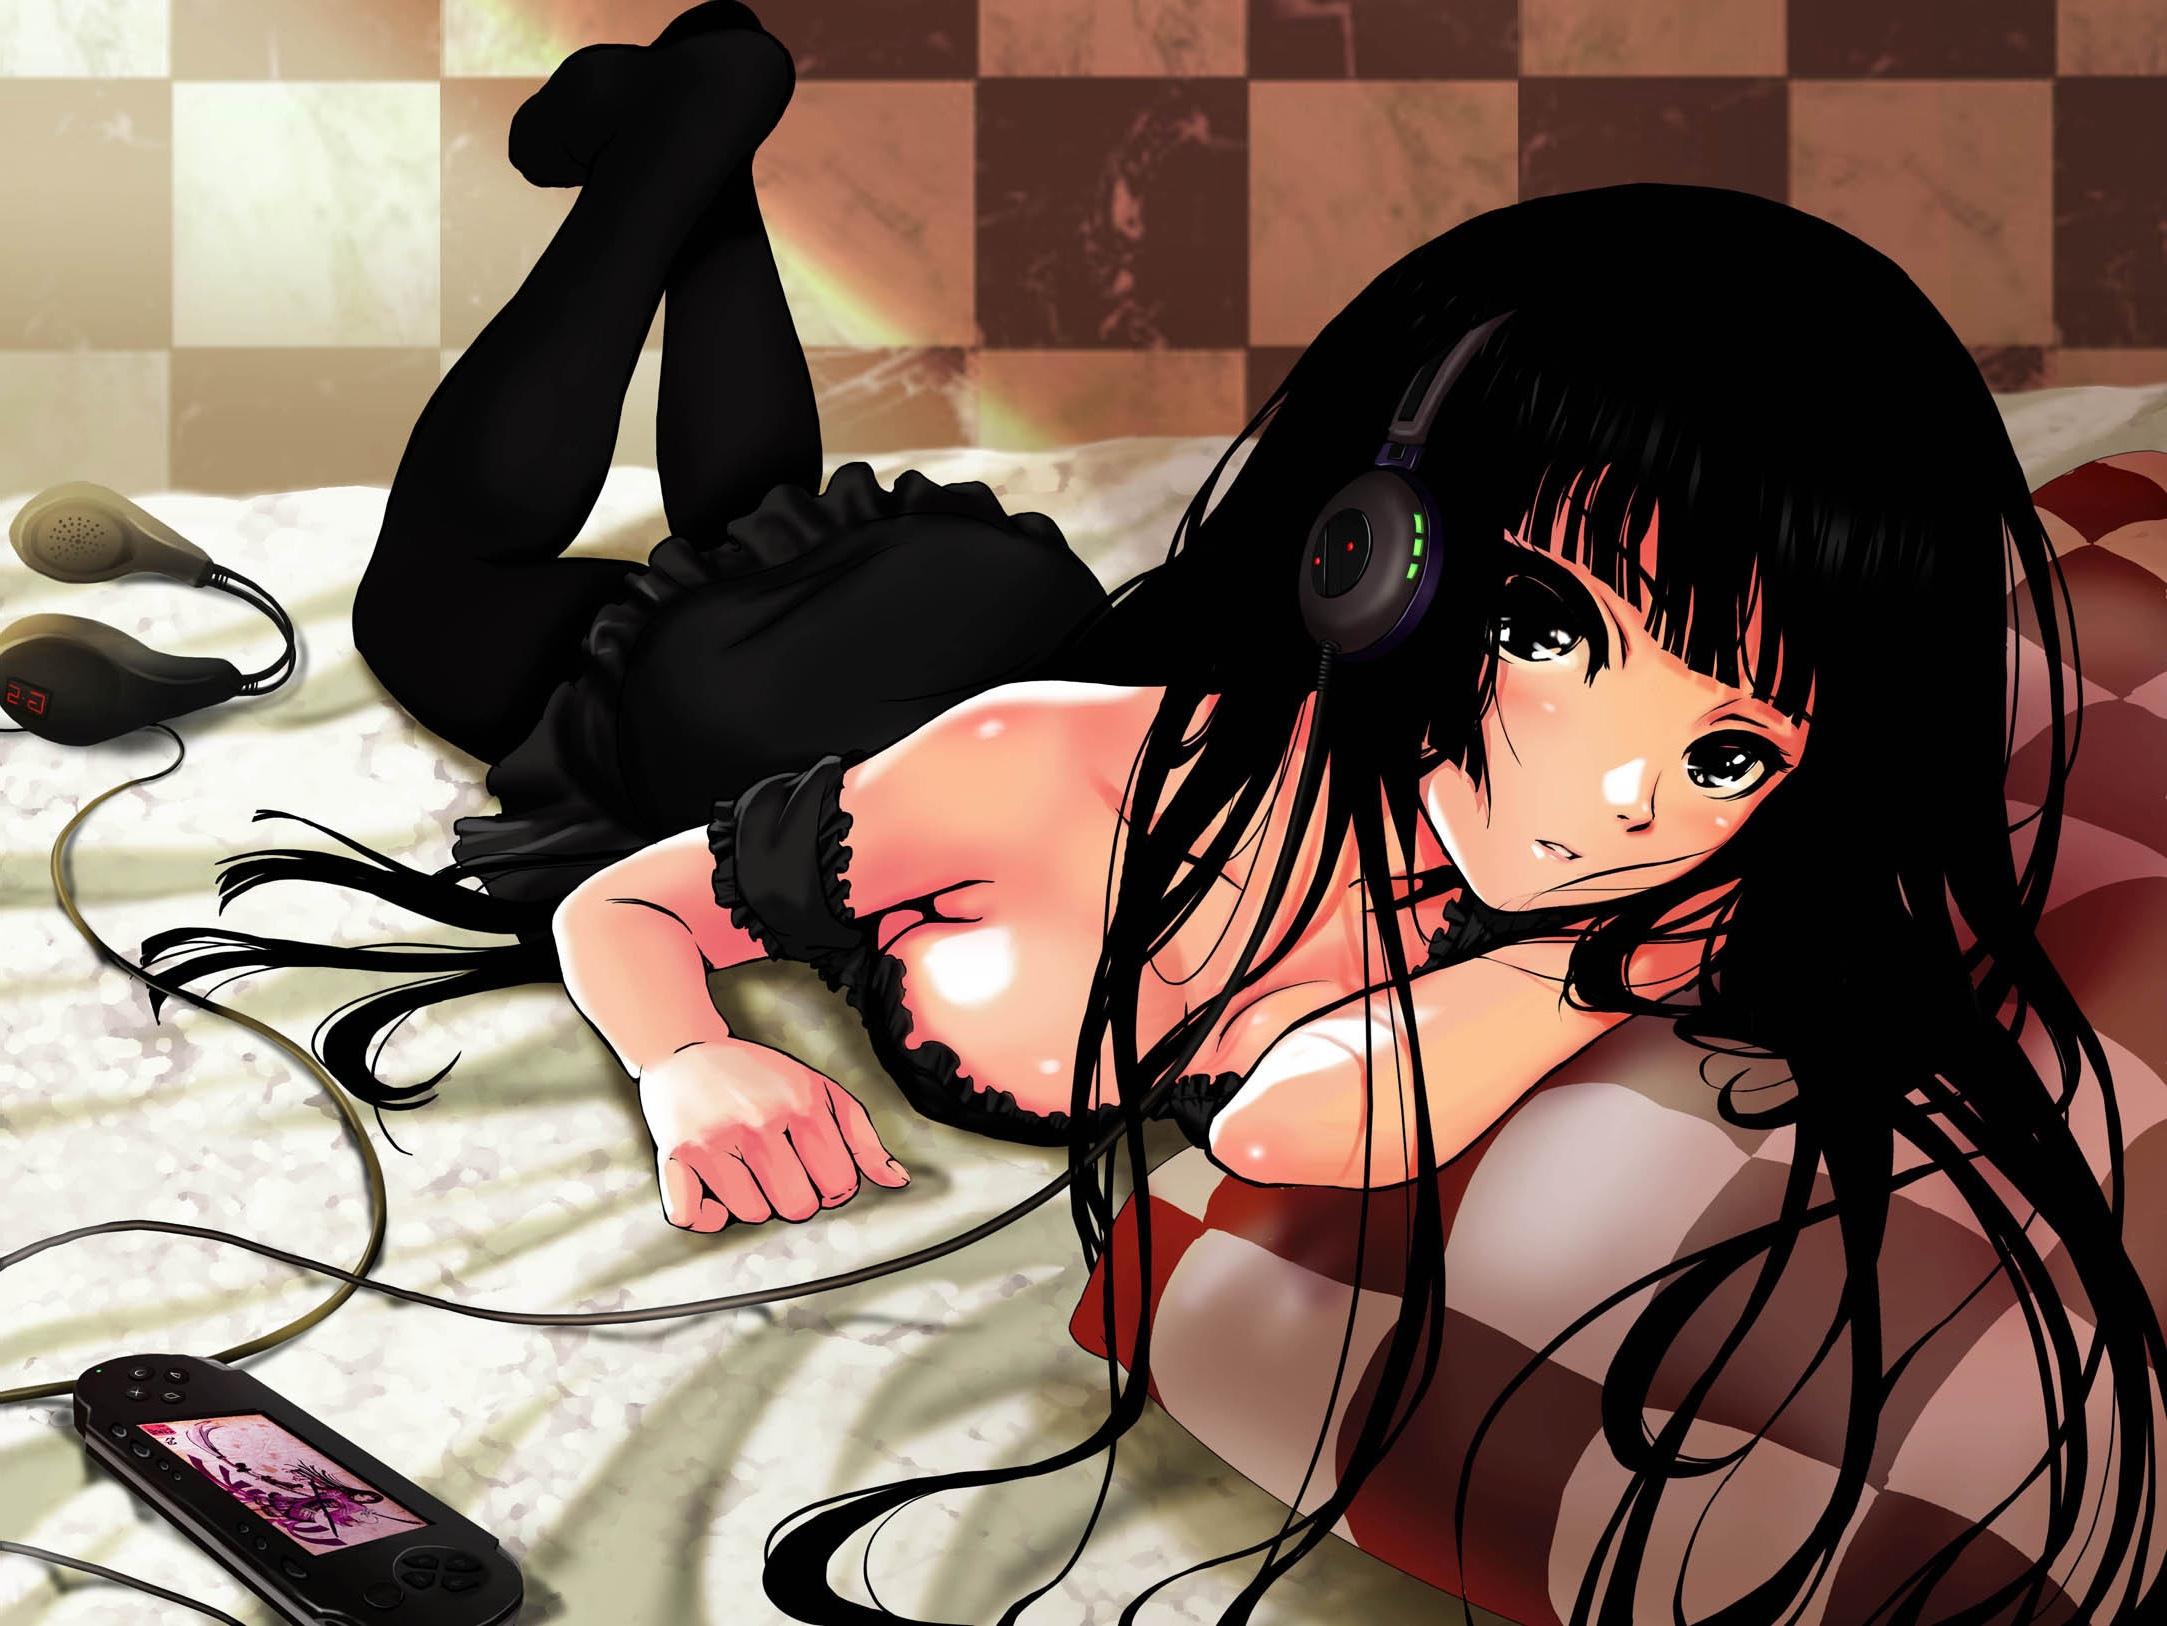 Image: Koumiyouji Maiko, black hair, look, headphones, player